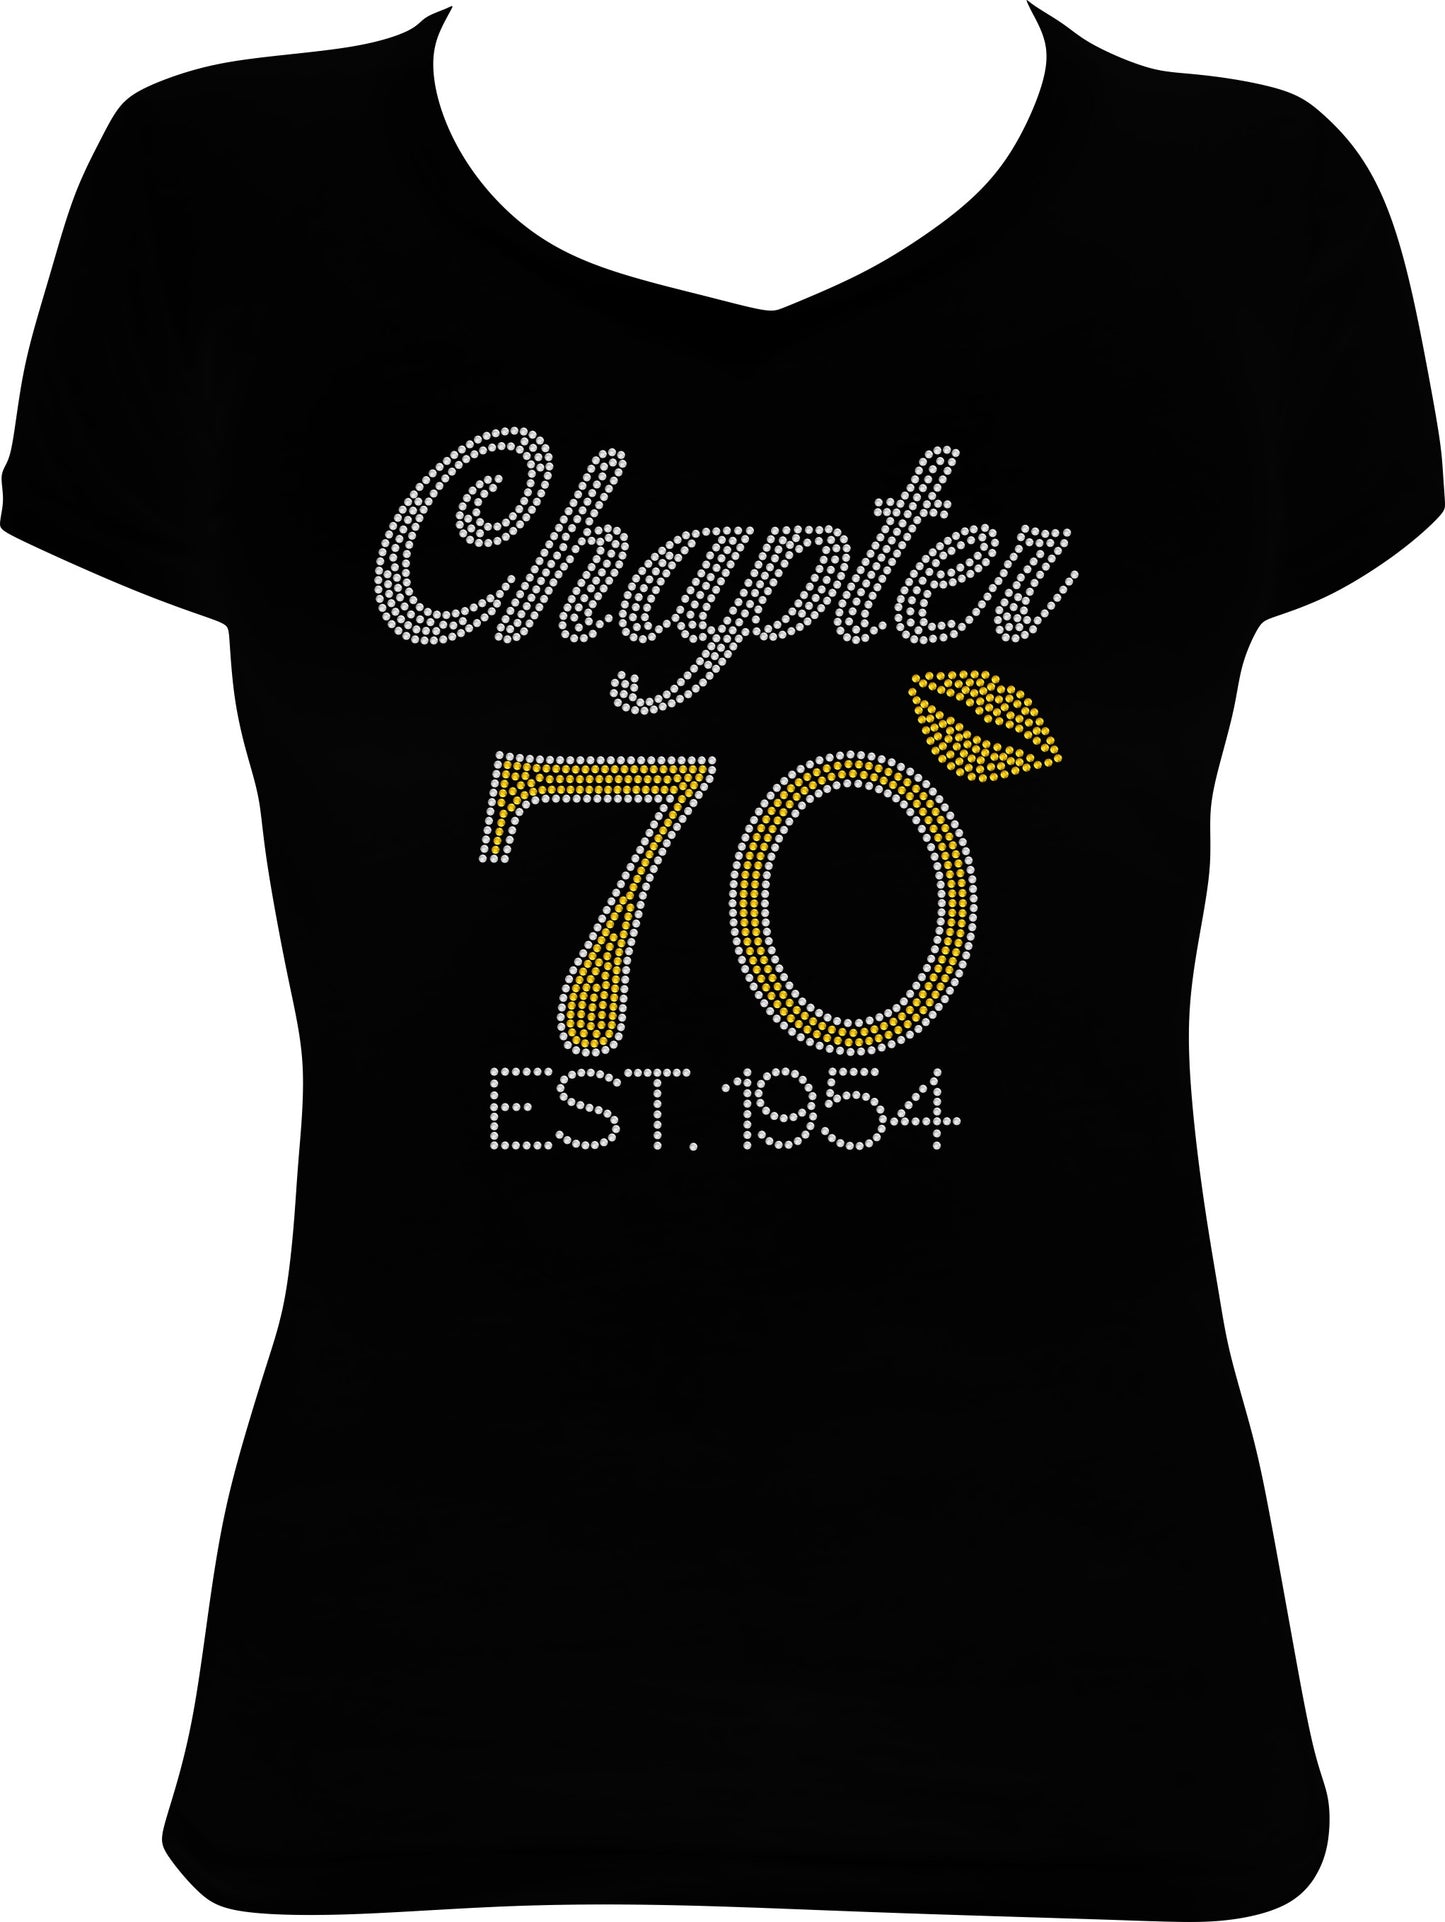 Chapter 70 Established 1954 Rhinestone Shirt